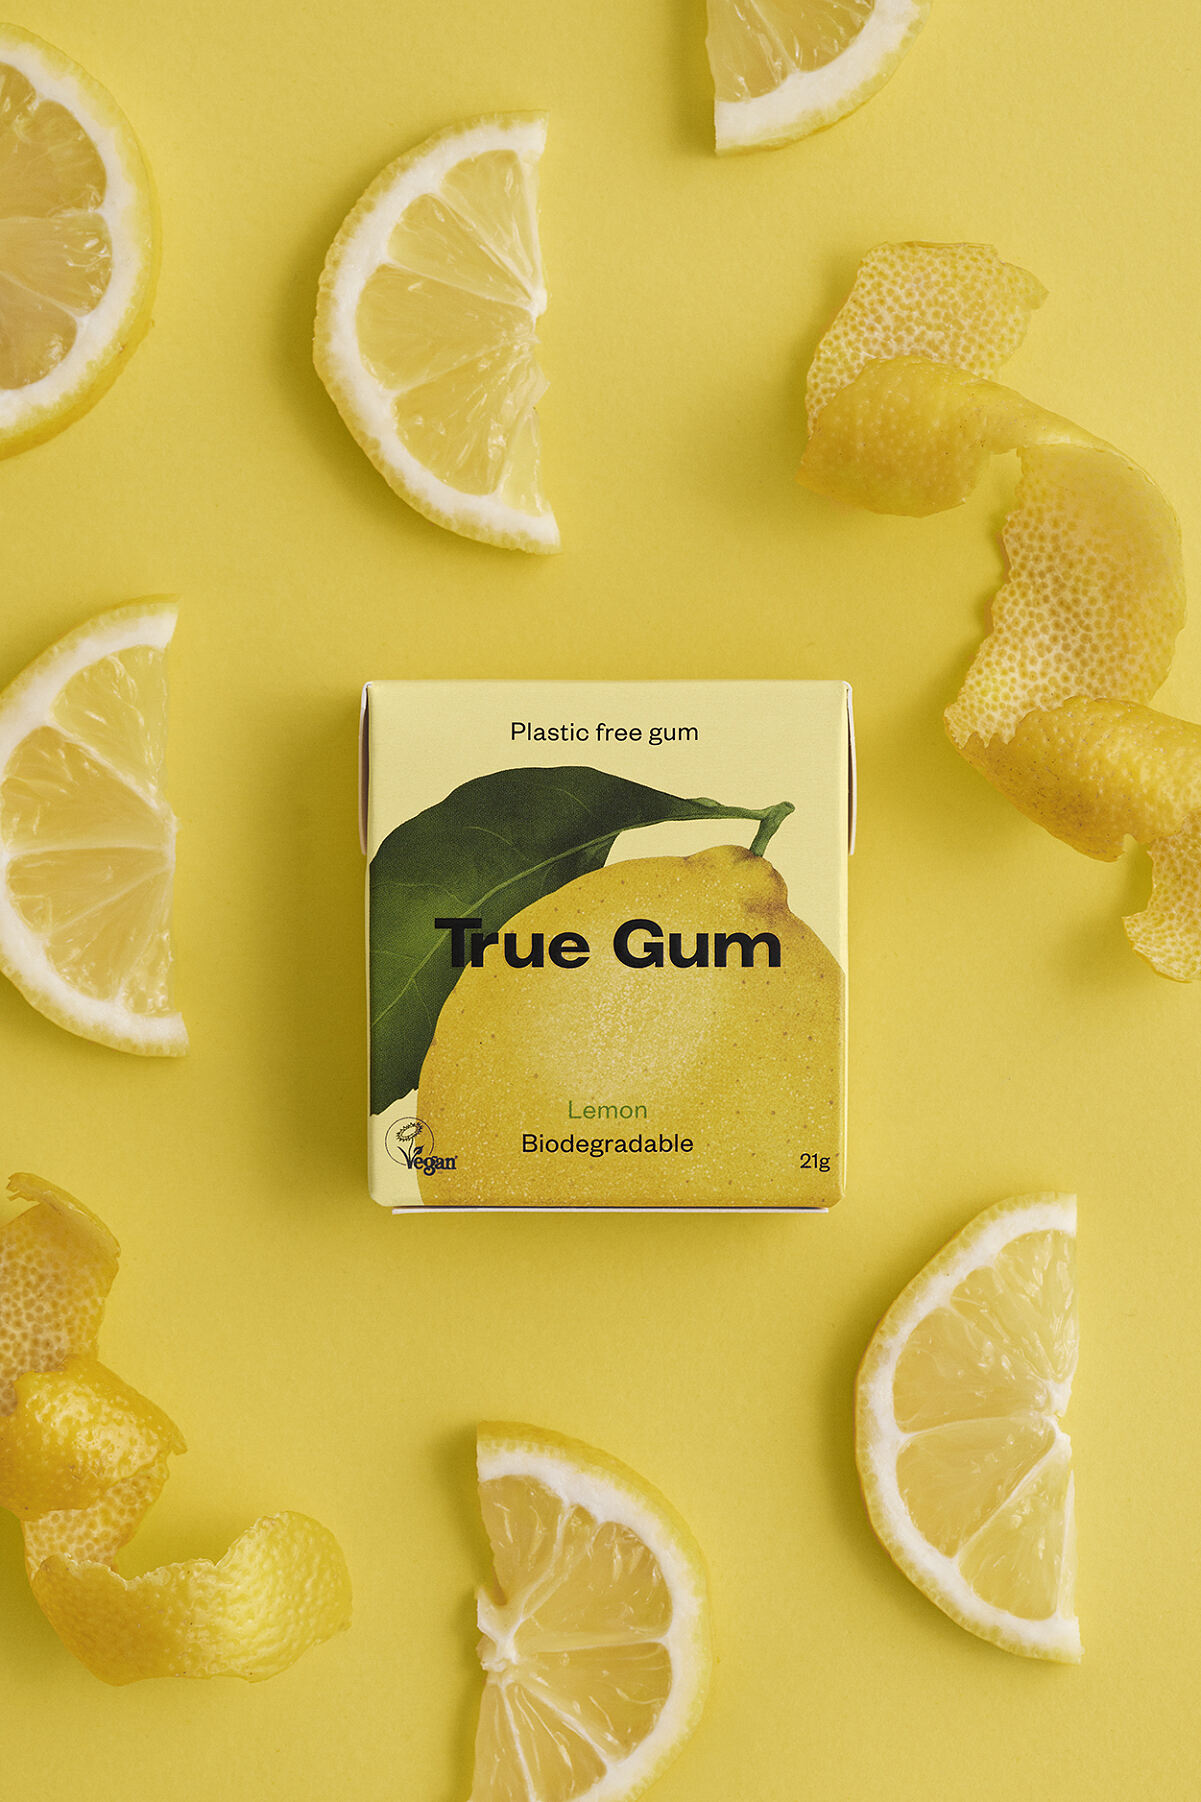 True Gum Lemon Packs